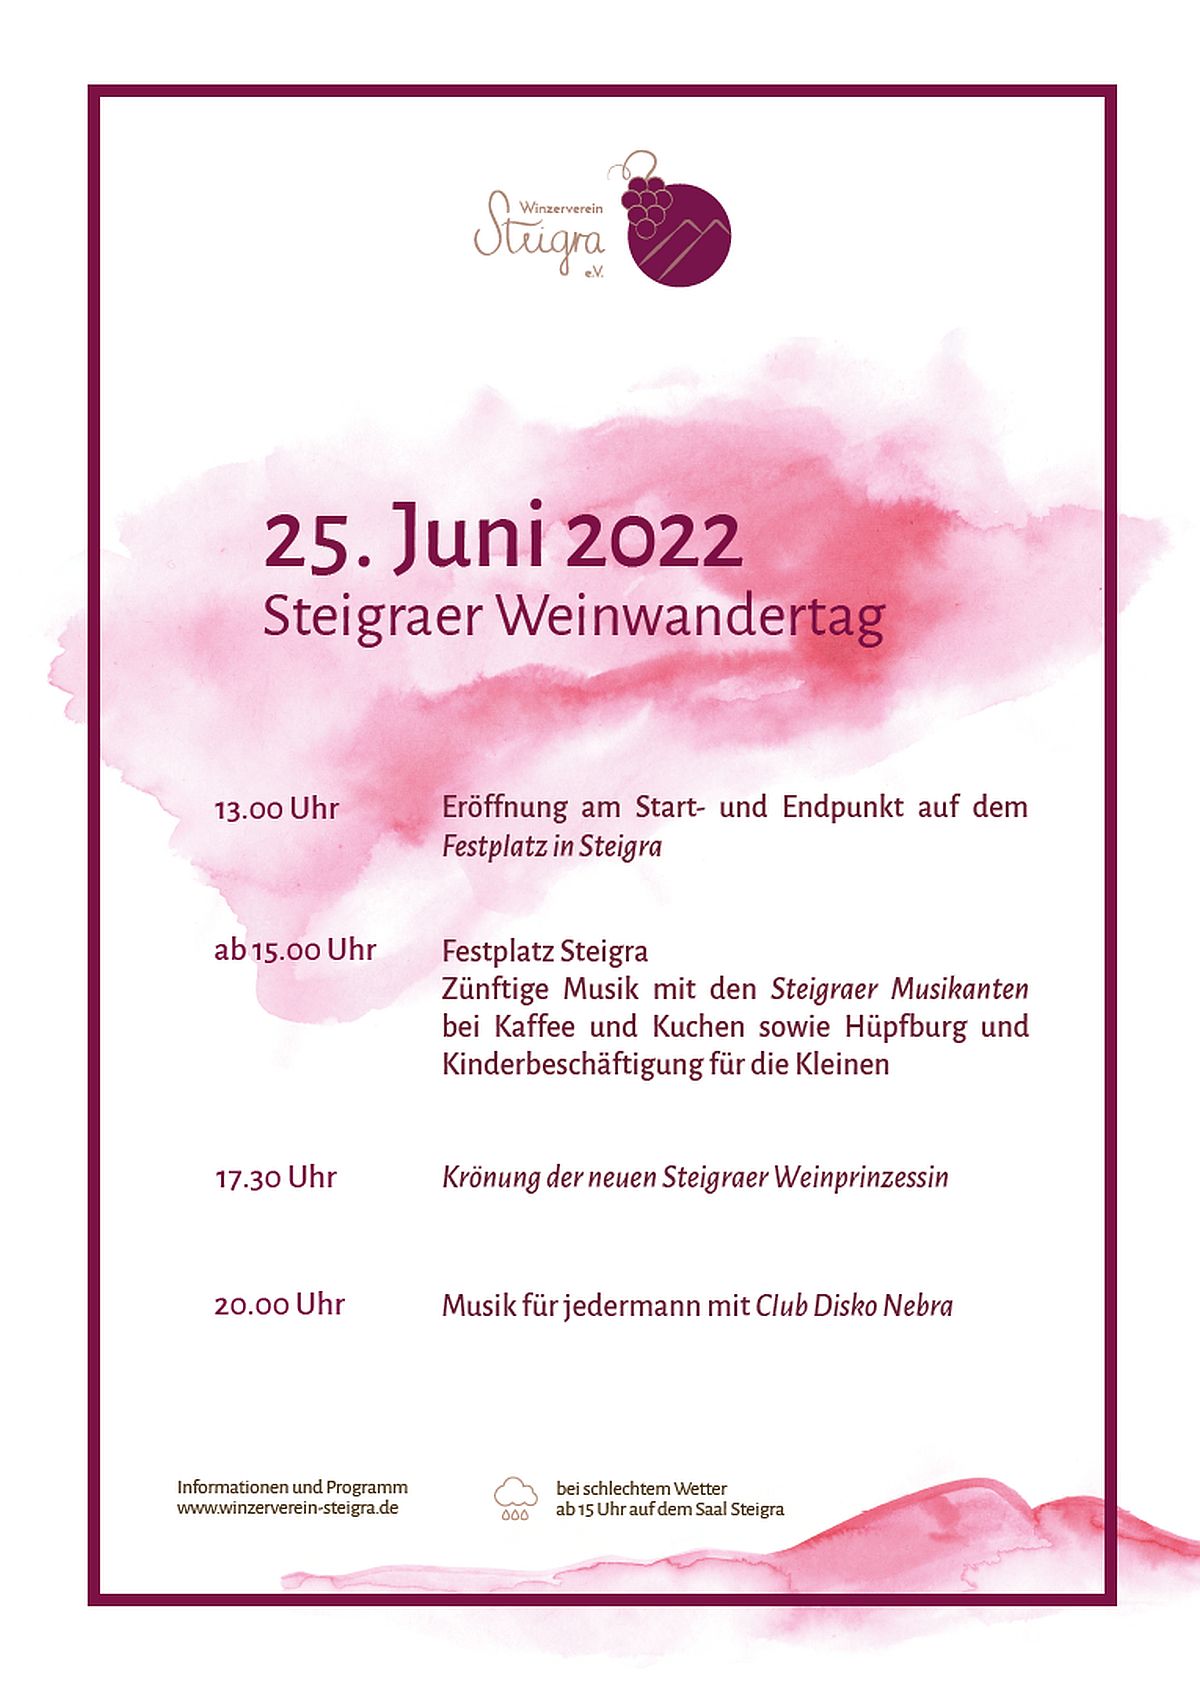 Die Weinwanderung in Steigra am 25. Juni 2022 - und zurück